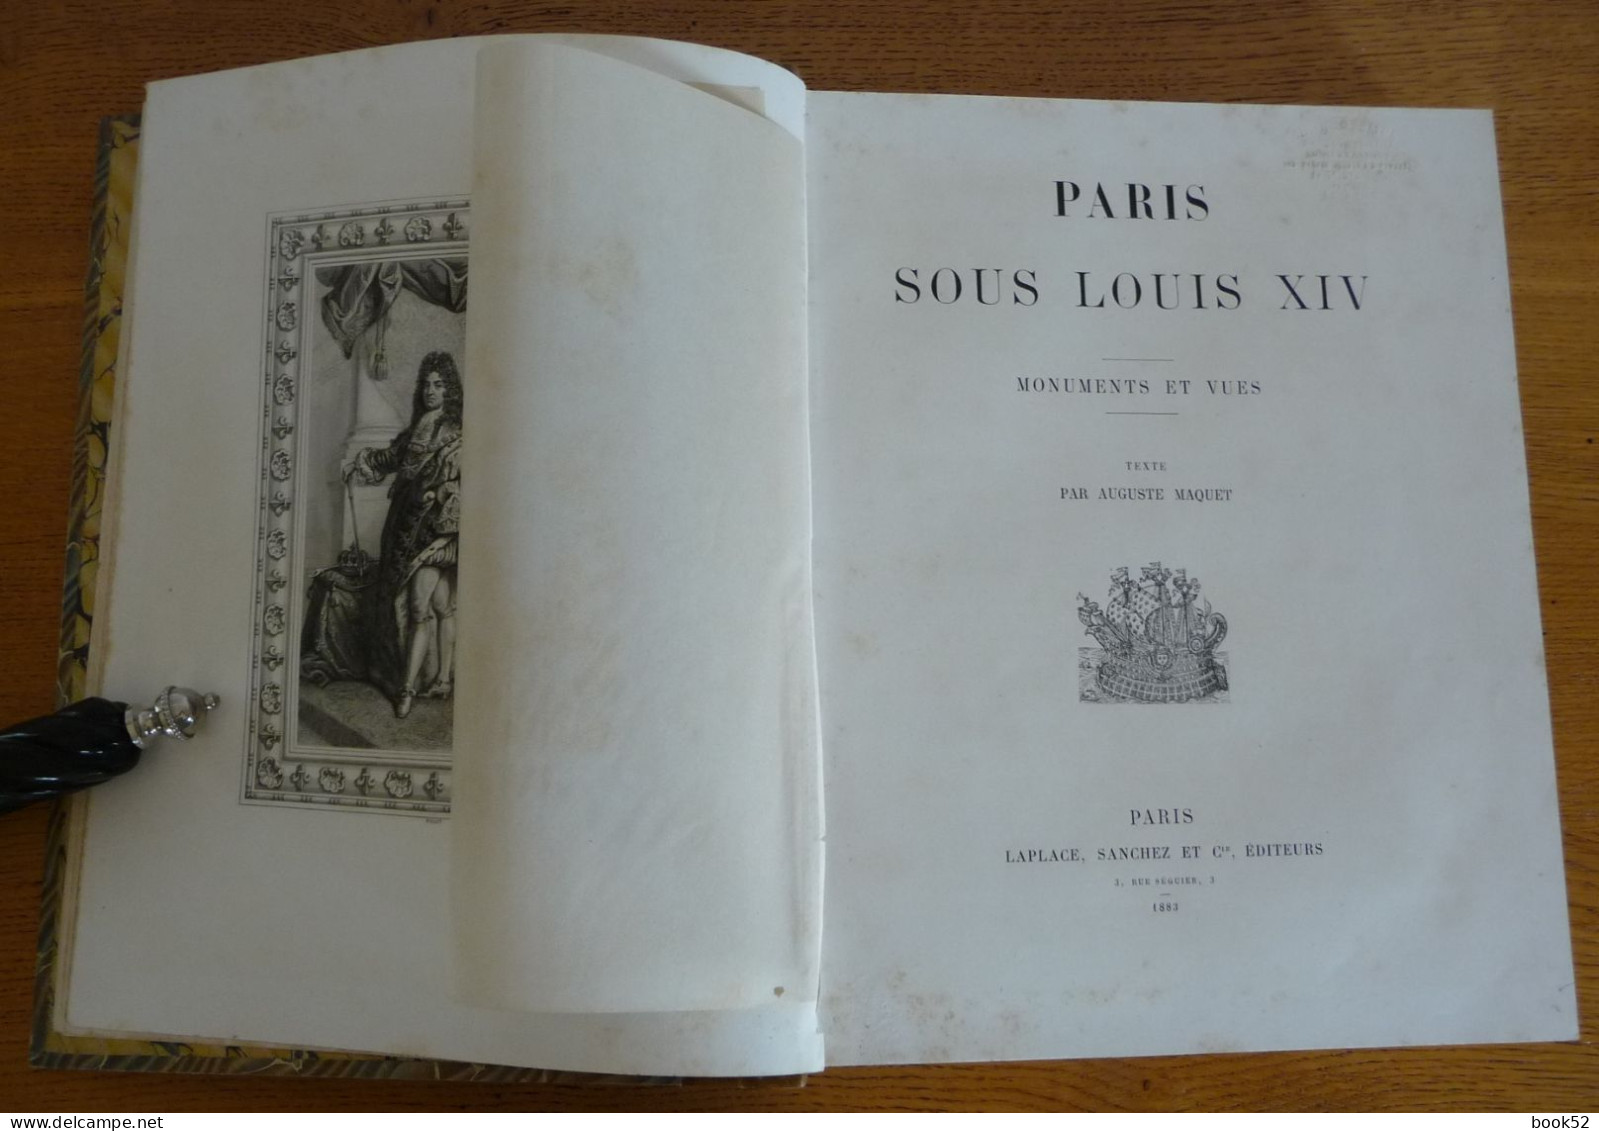 PARIS Sous LOUIS XIV Par Auguste Maquet (1883) Monuments Et Vues - Paris